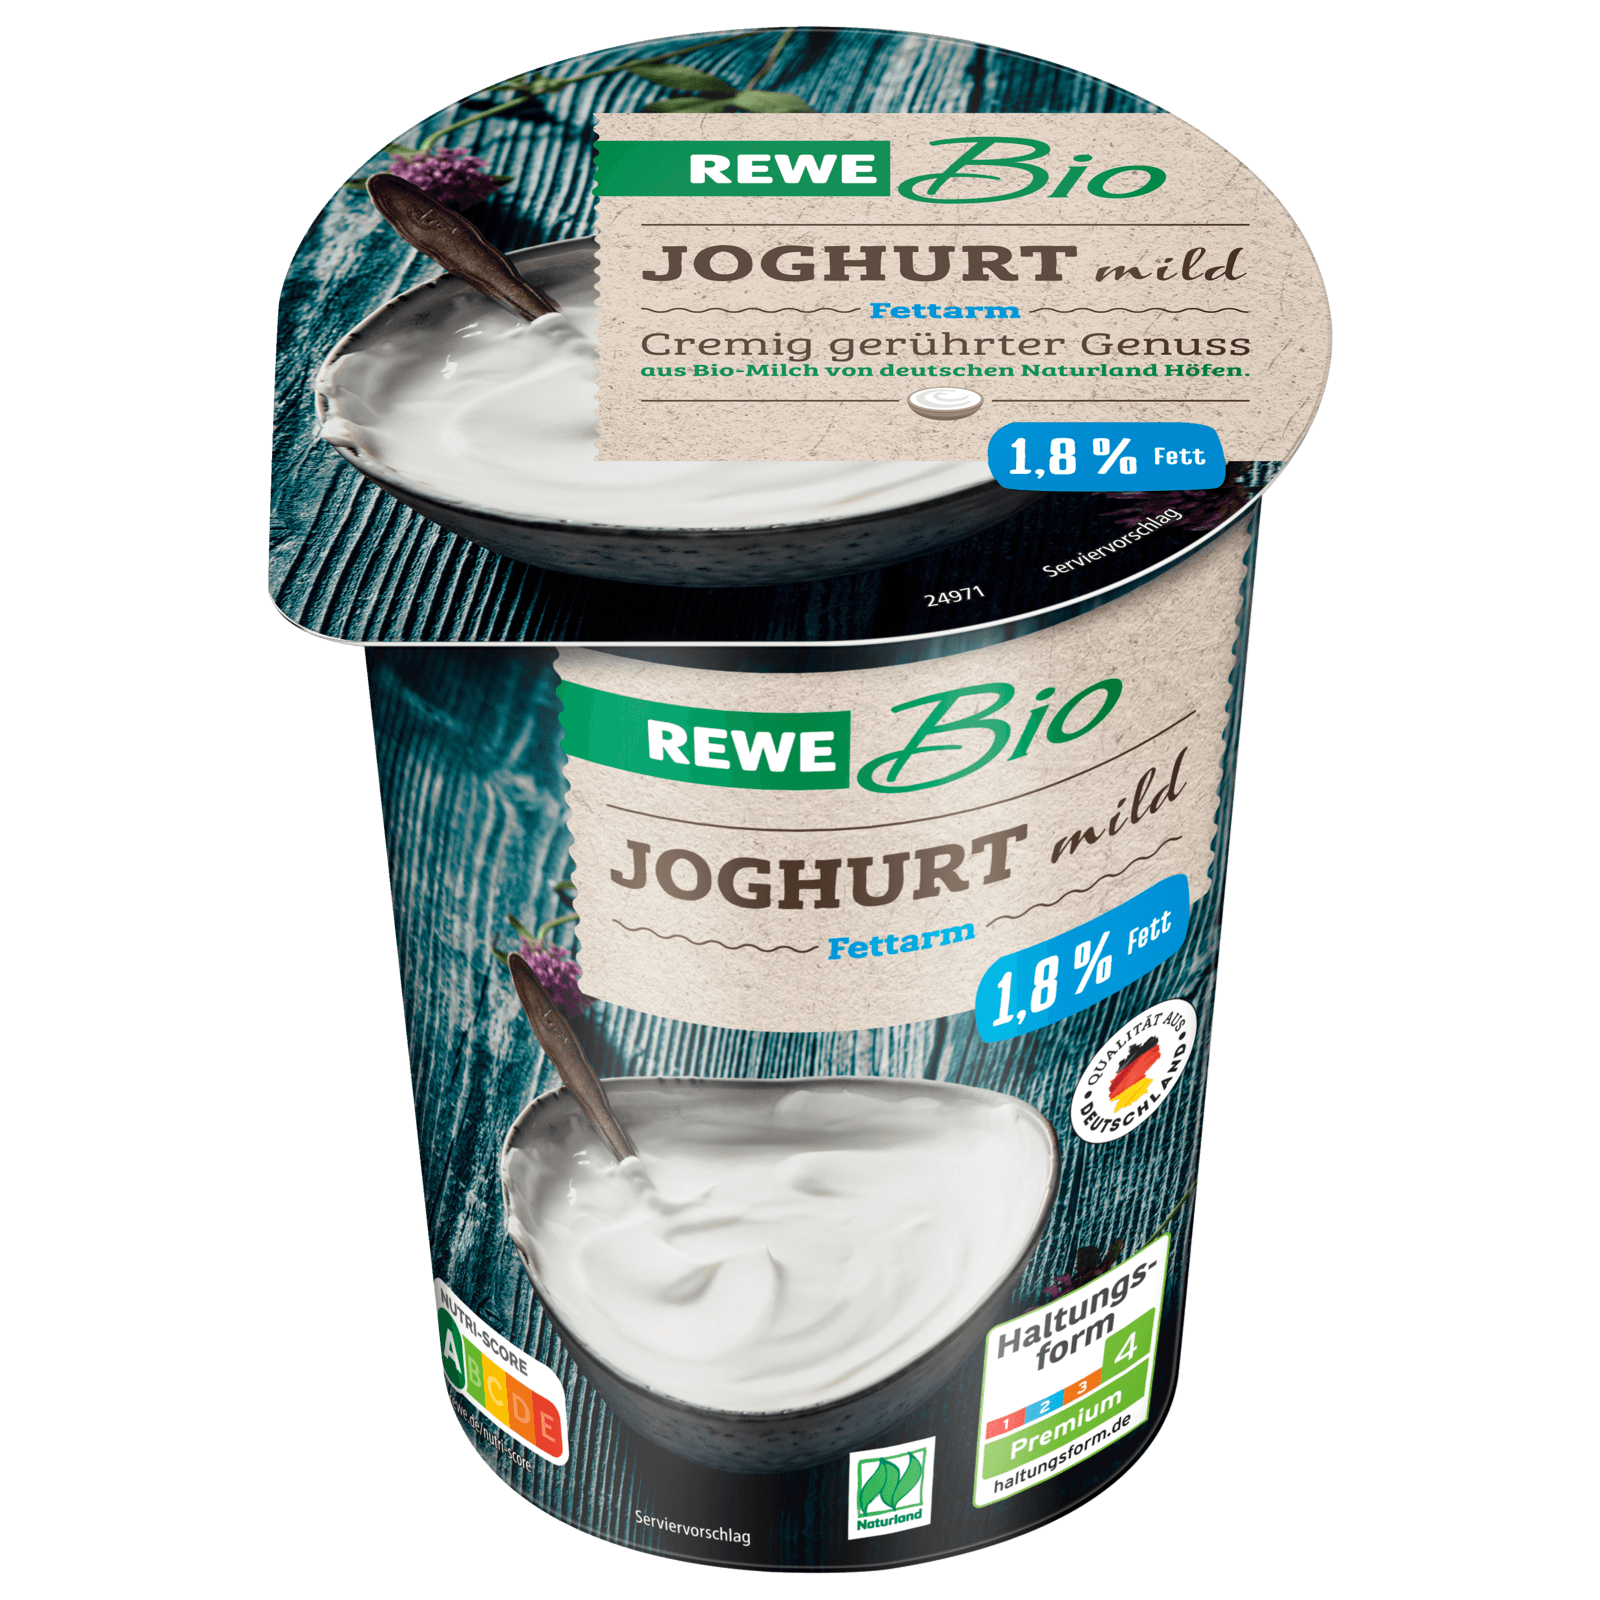 REWE Bio Joghurt mild fettarm 500g